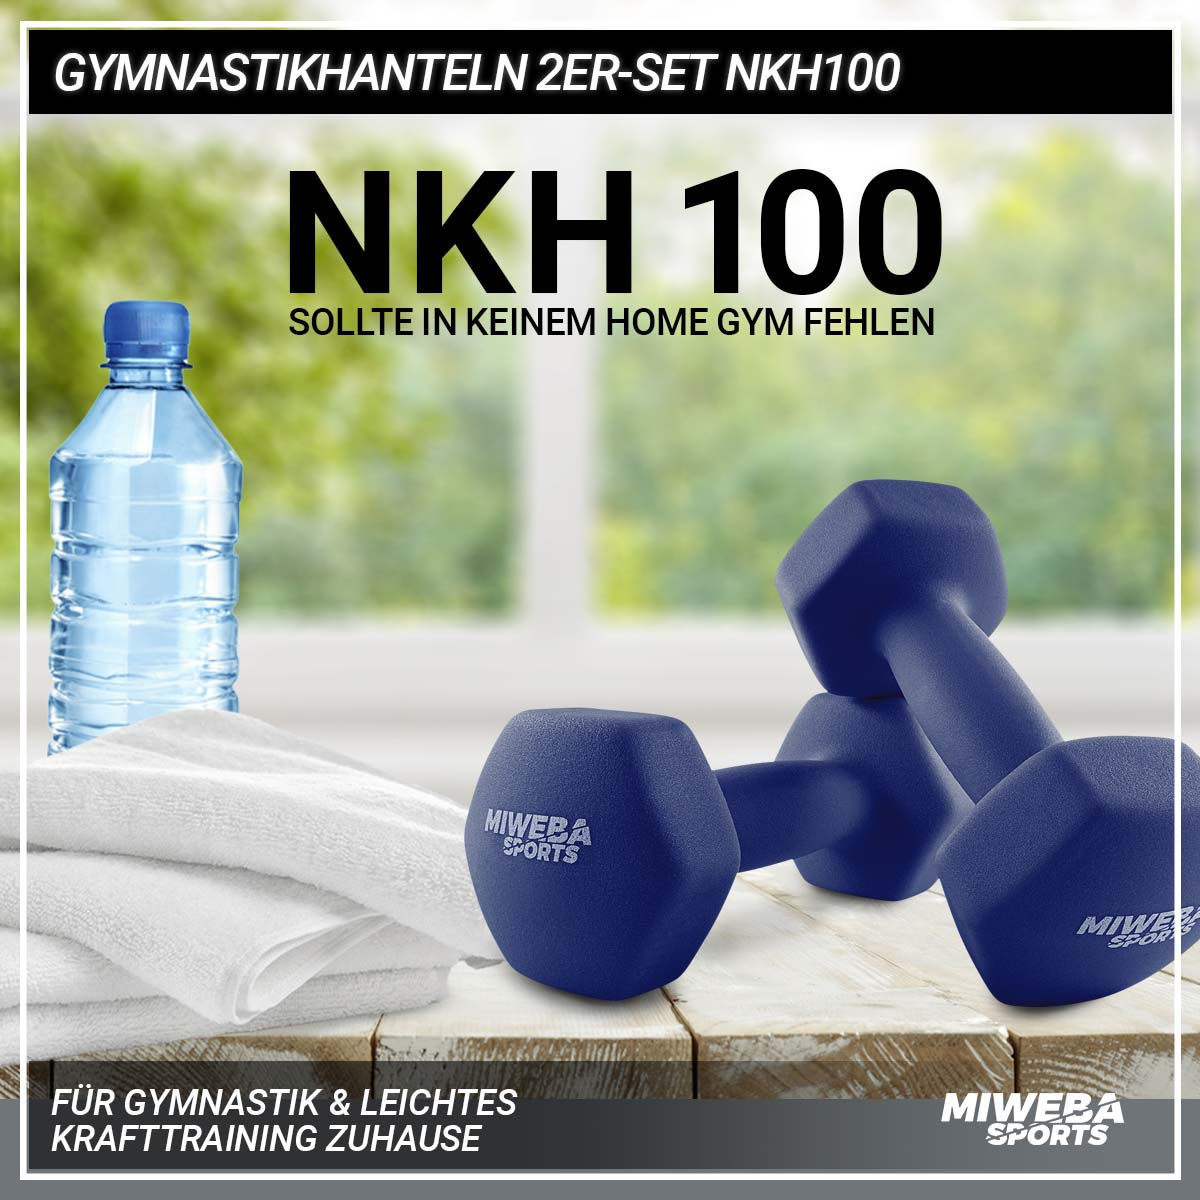 MIWEBA SPORTS Kurzhantel, 2er Gymnastikhanteln Königsblau NKH100 Set